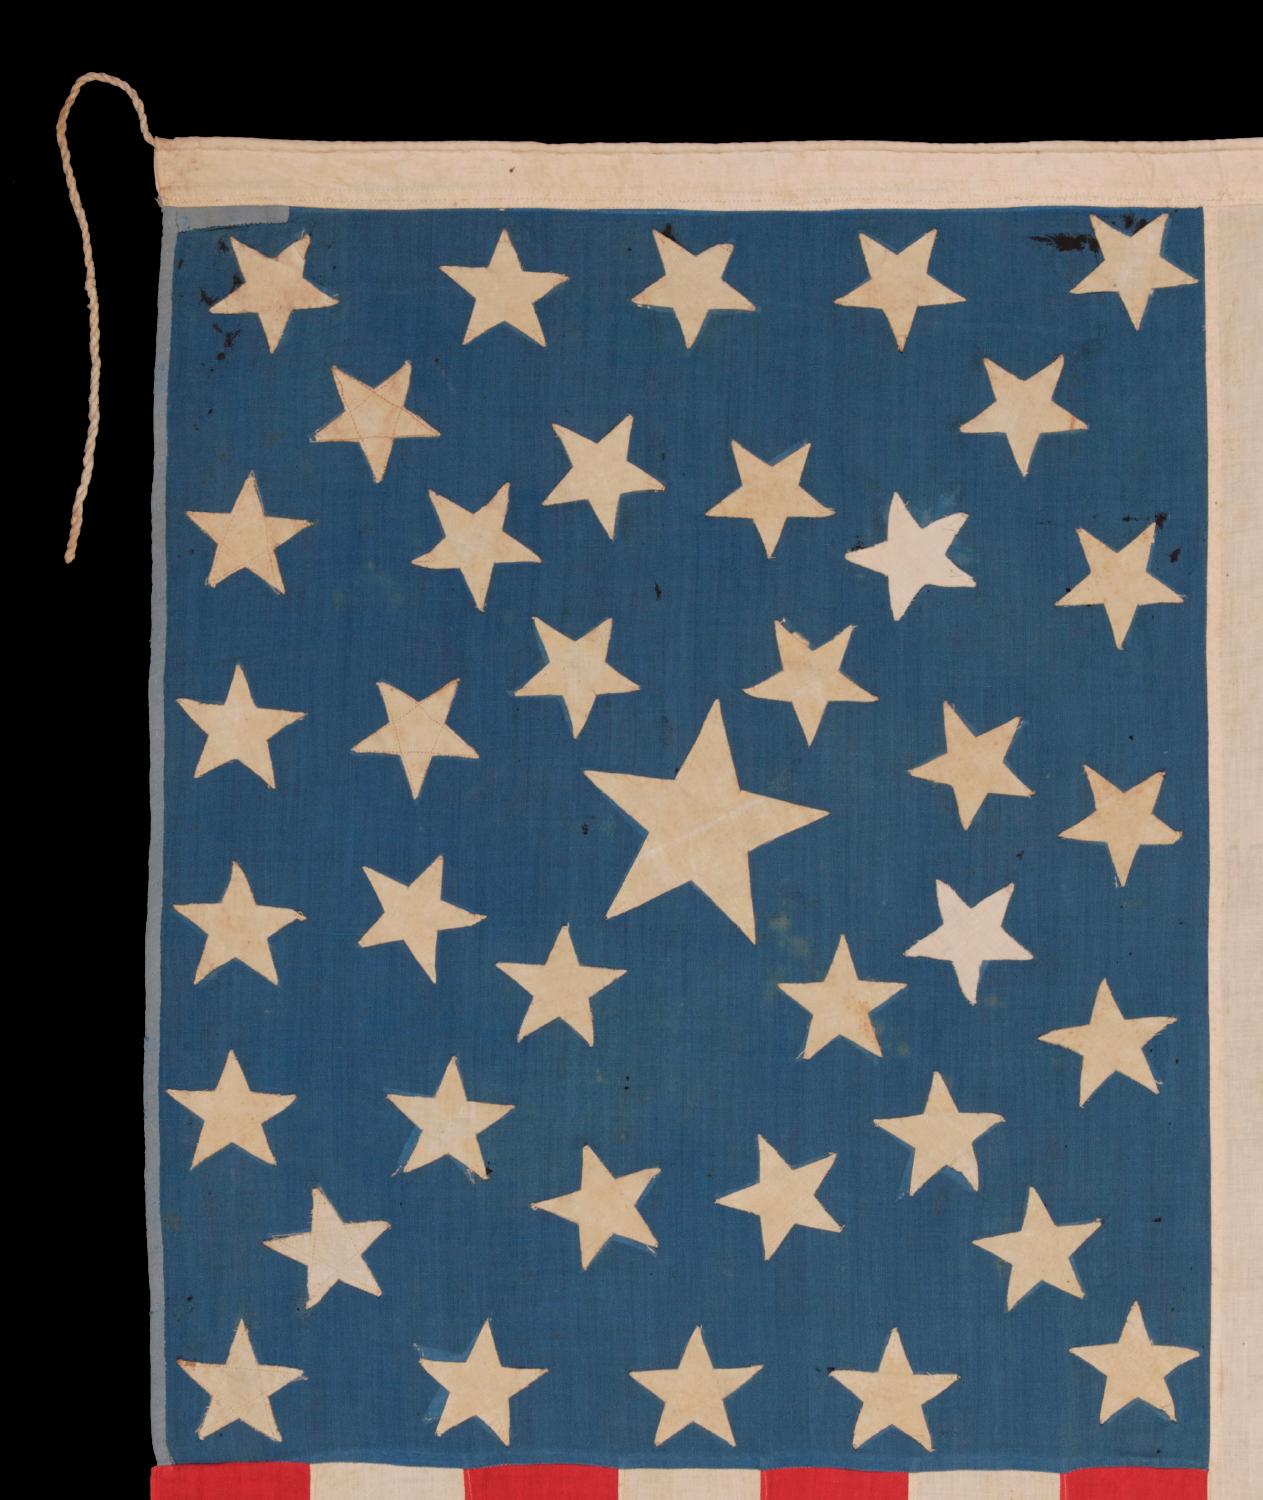 38 amerikanische Flagge mit 38 Sternen und einem Südkreuz im Kanton, Colorado Statehood (19. Jahrhundert)